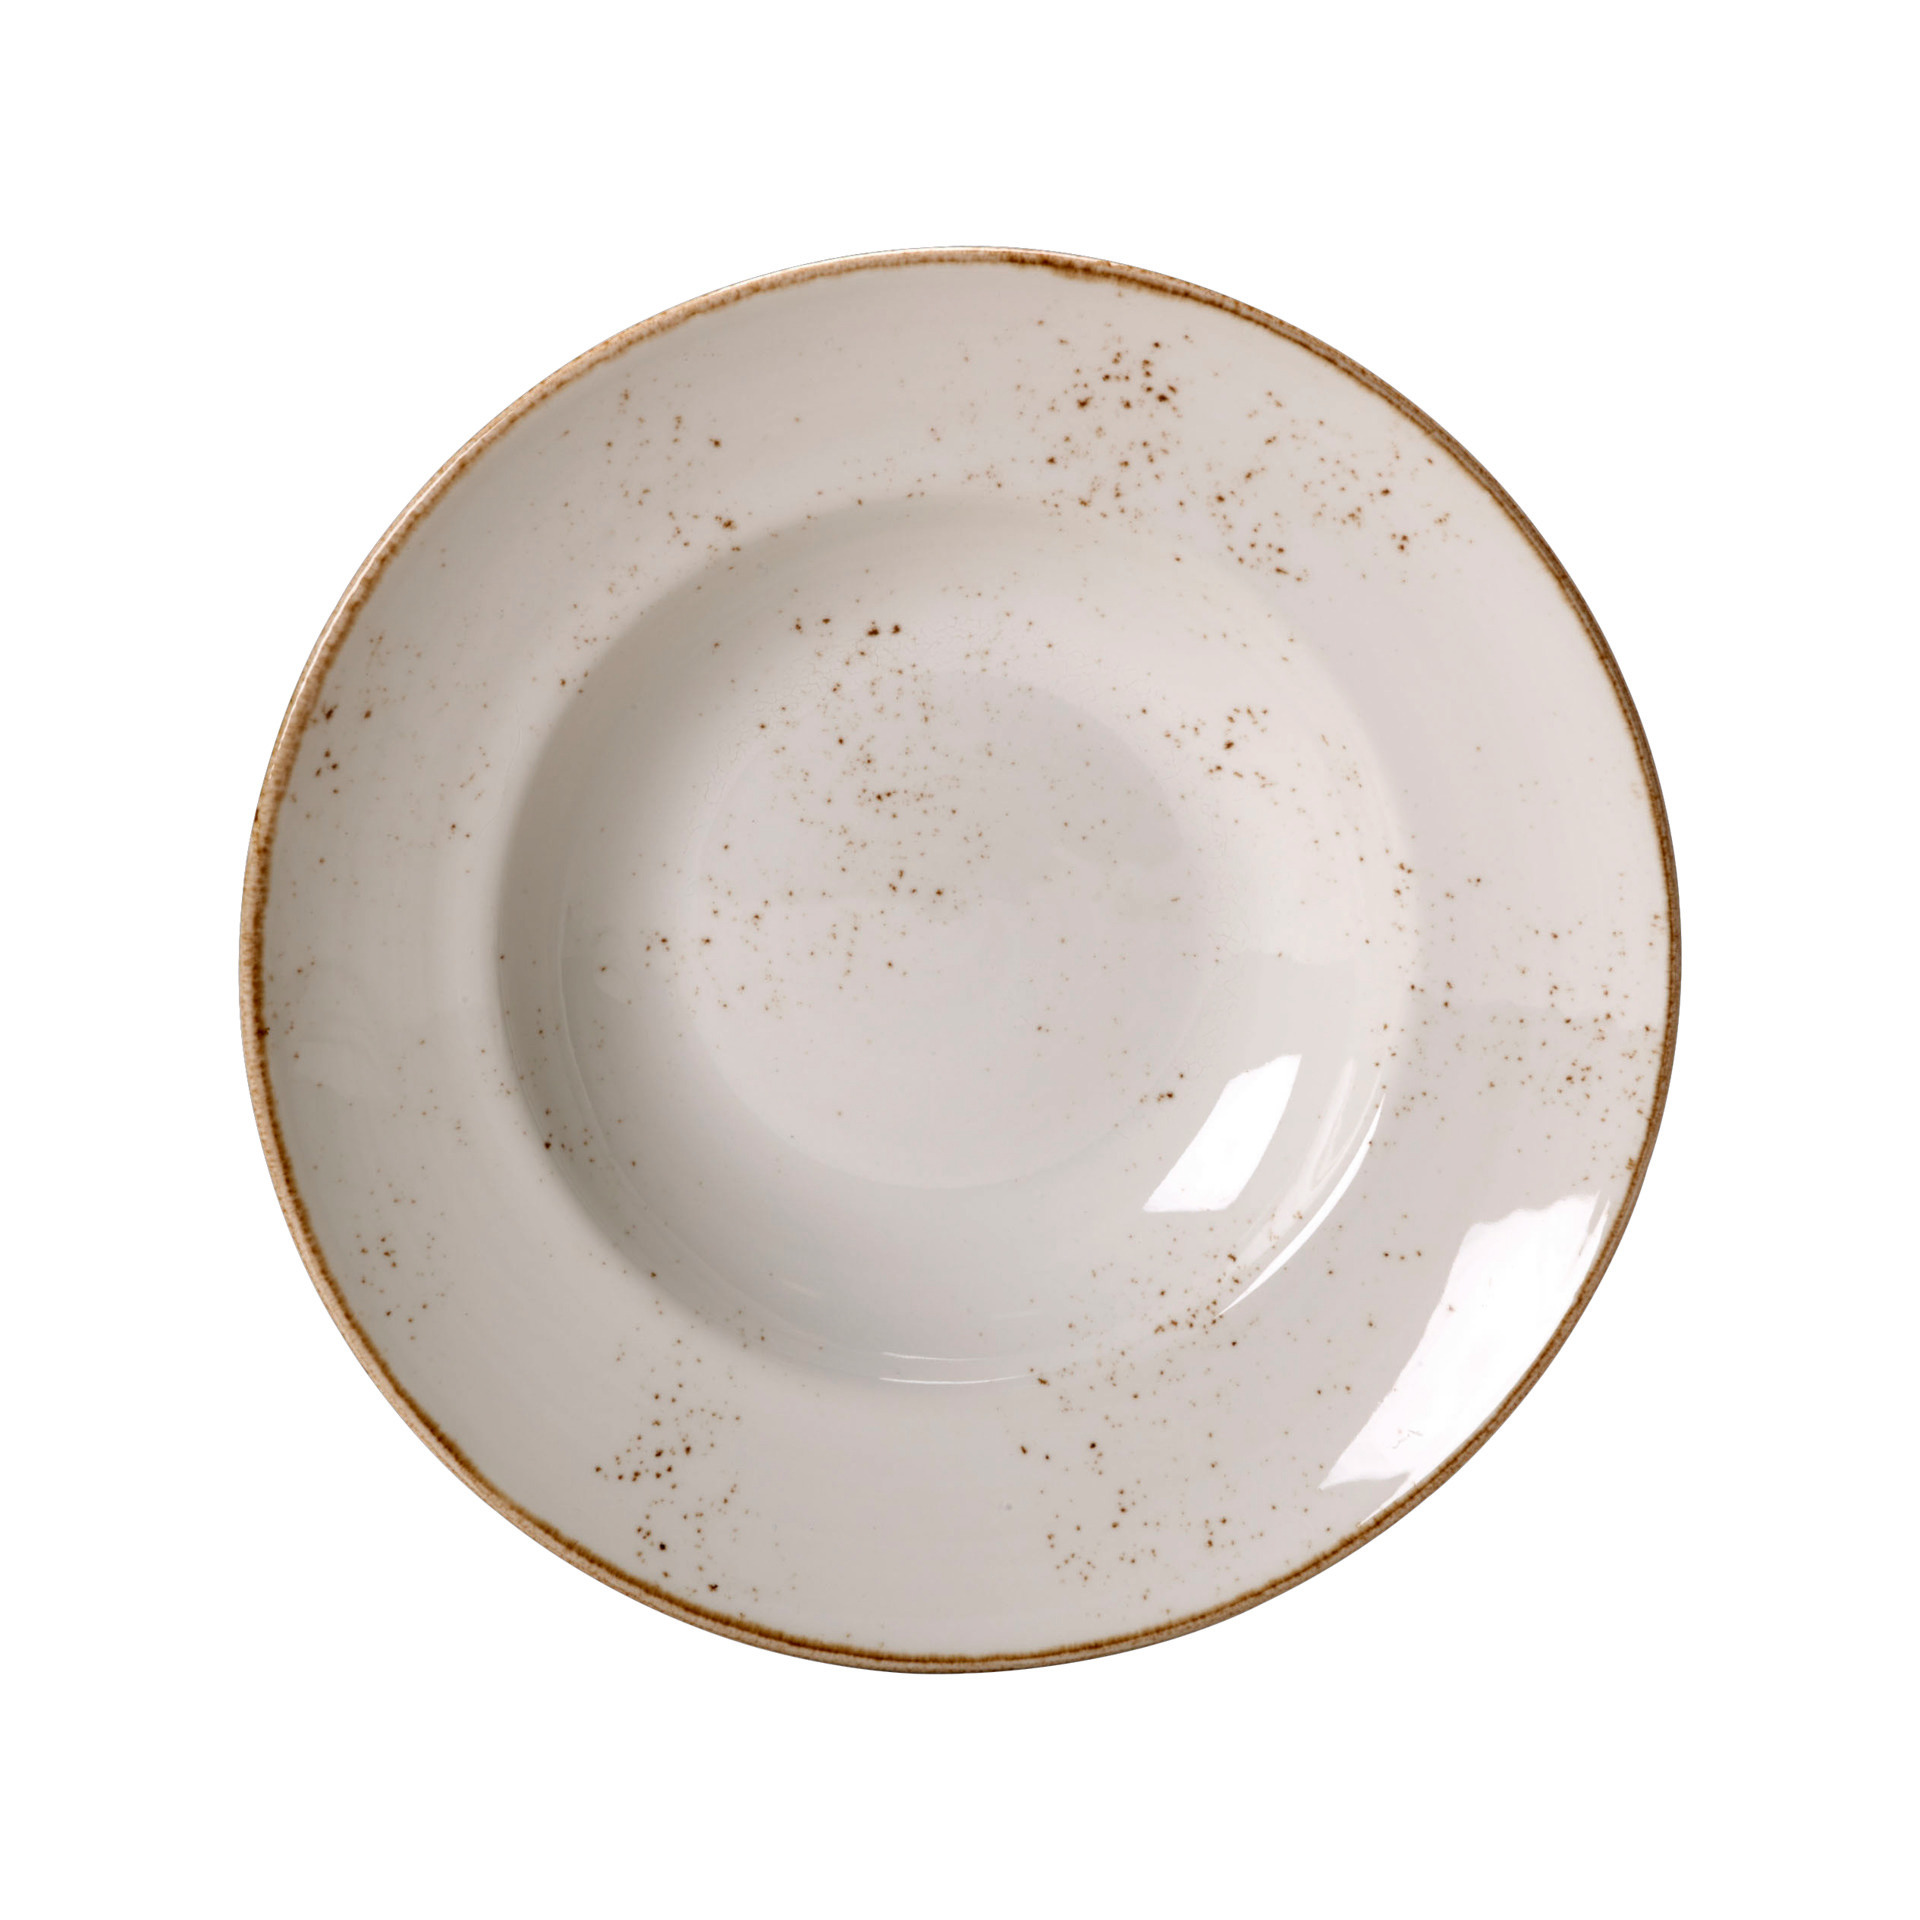 Nouveau Bowl Craft White 27 cm # 11550372